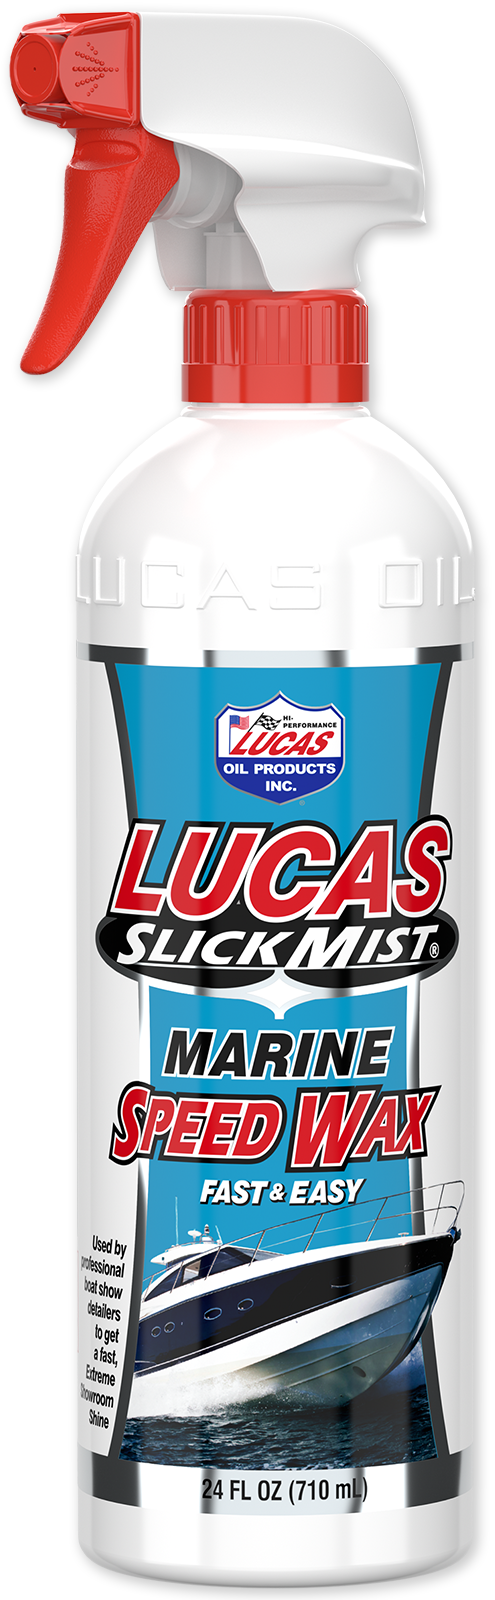 LUCAS, Slick mist, 11294, Ceramic speed wax, 710ml, Professional